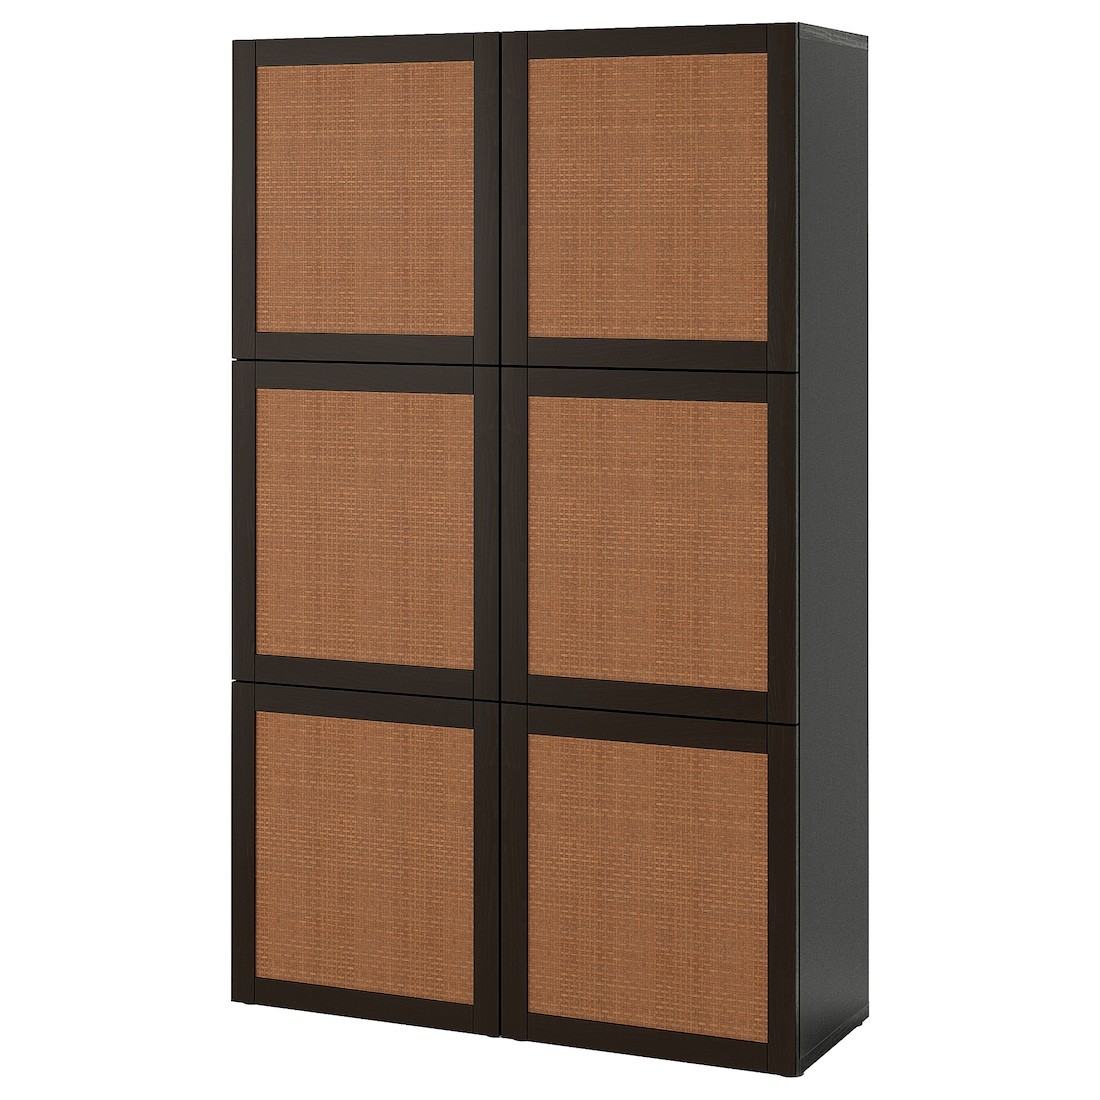 BESTÅ БЕСТО Комбинация для хранения с дверцами, черно-коричневый Studsviken / темно-коричневый плетеный тополь, 120x42x193 см